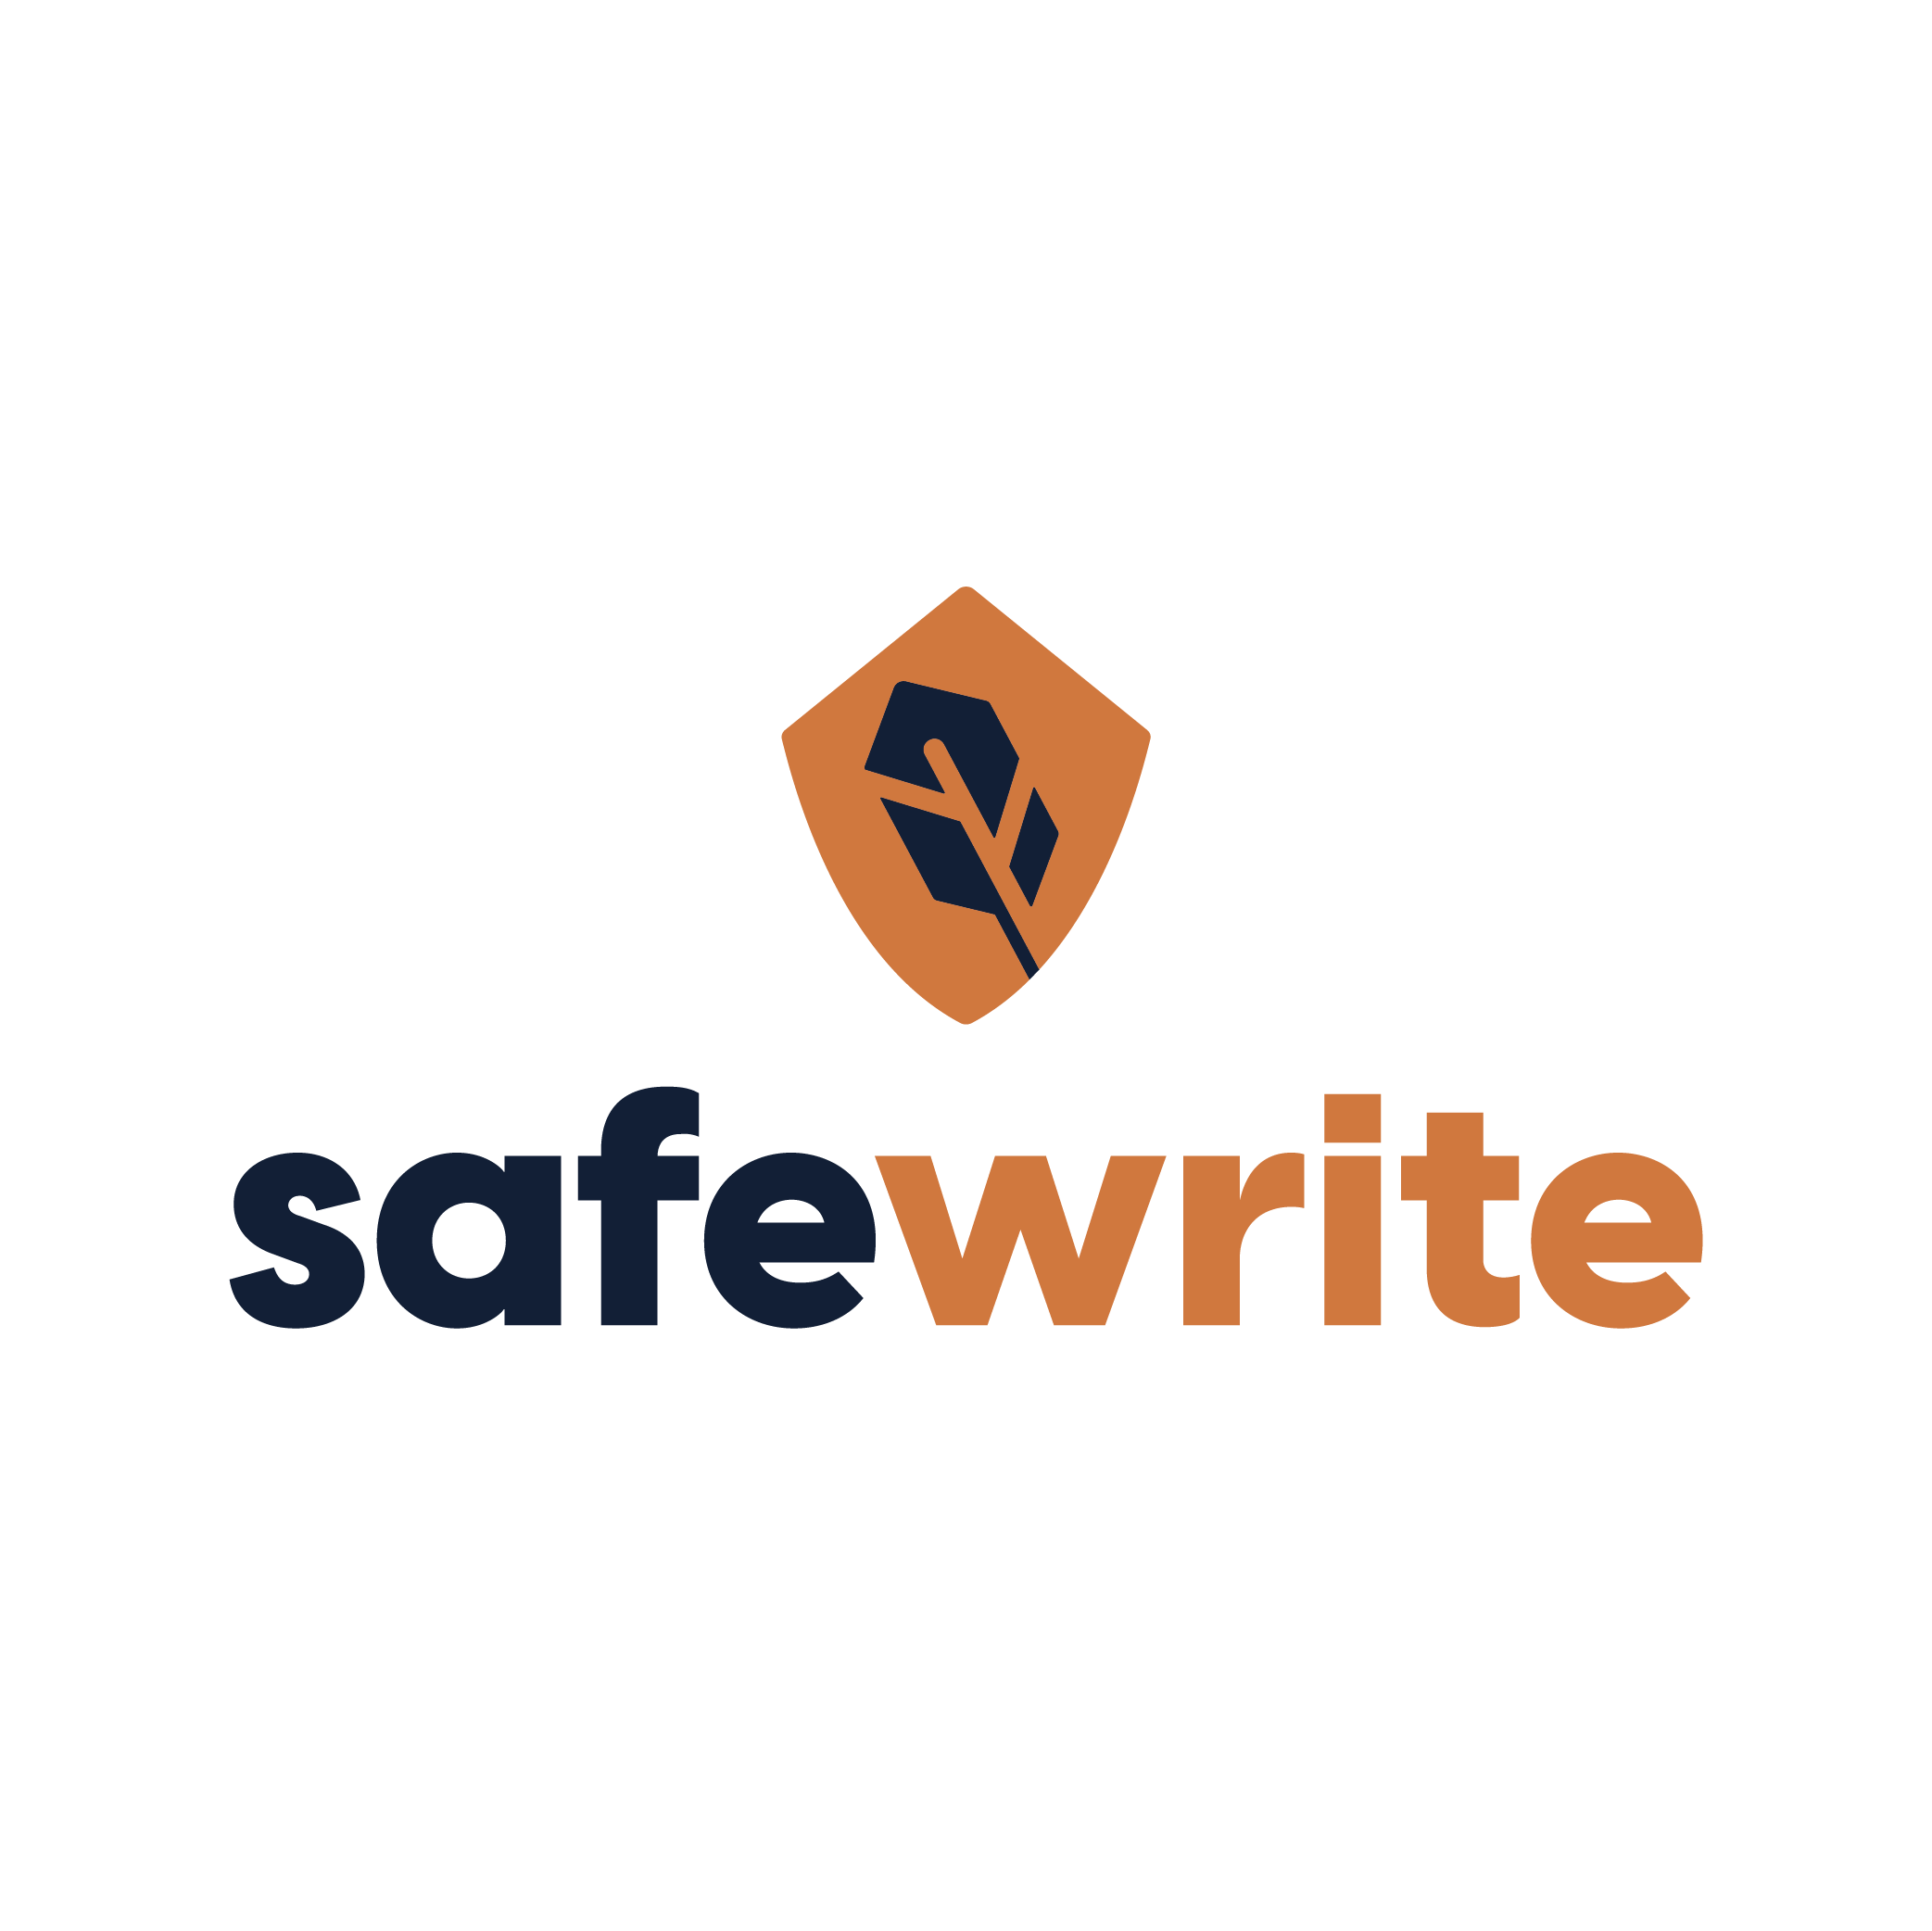 Safewrite vertical logo